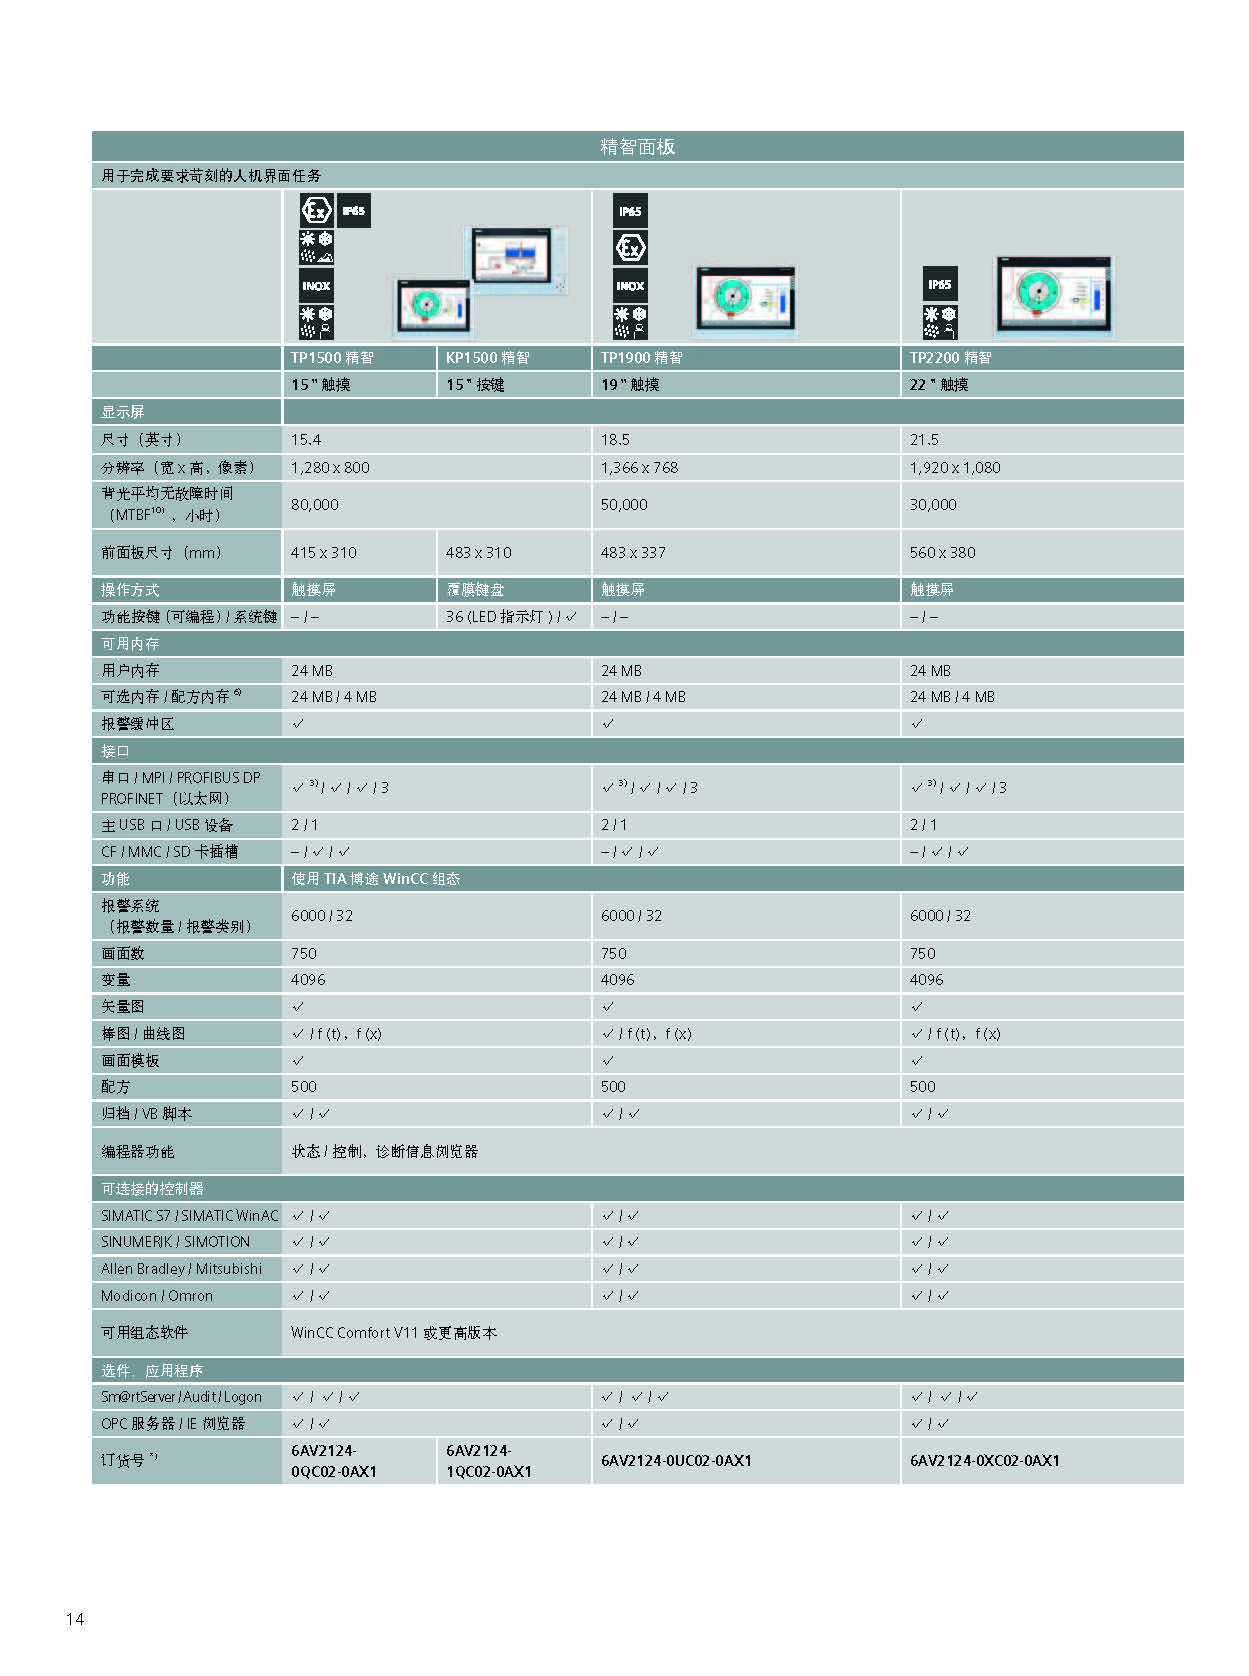 西门子MP377-19触摸式面板6AV6644-0AC01-2AX1